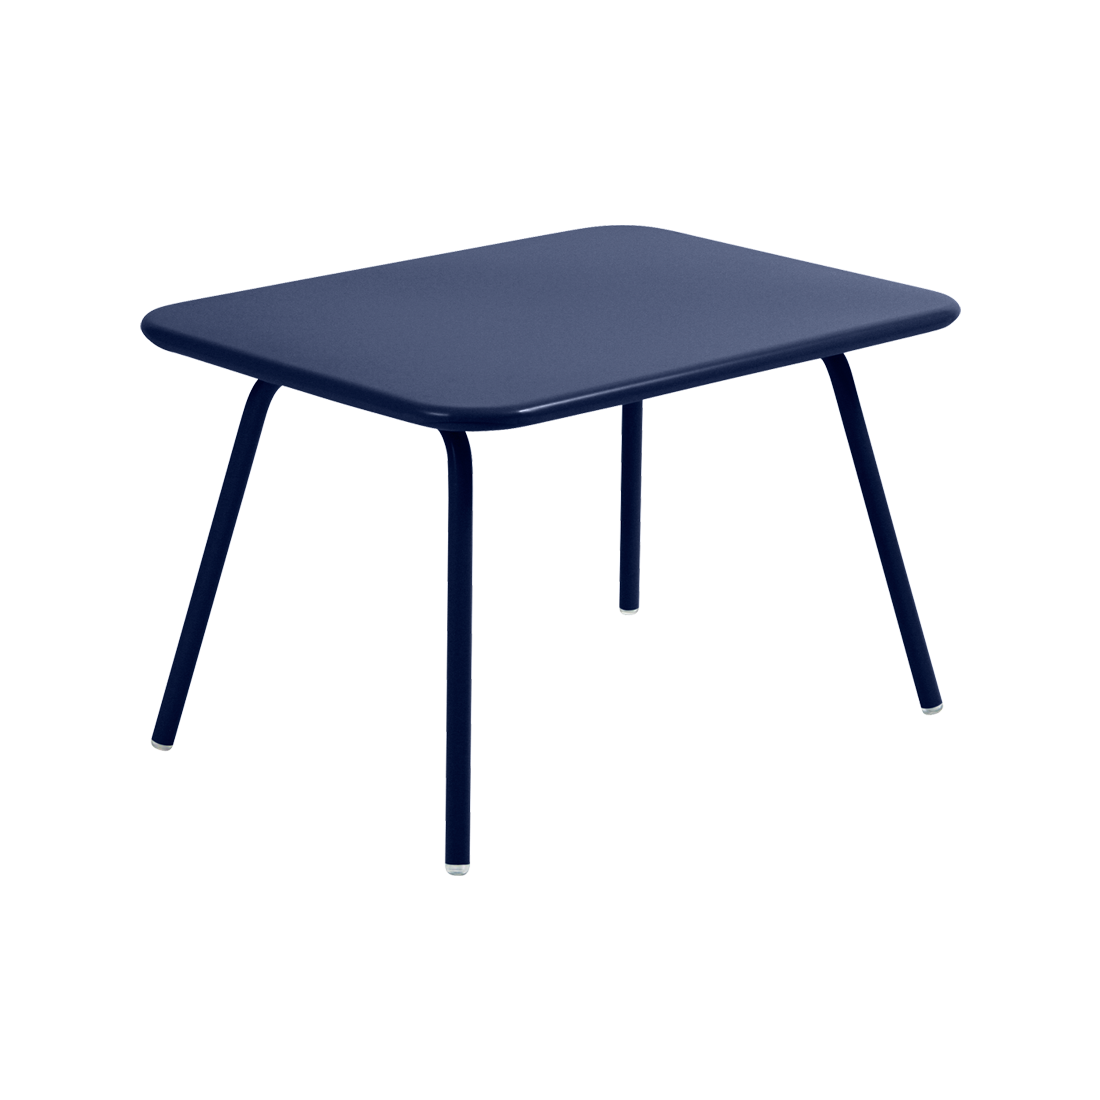 table de jardin pour enfant, table metal pour enfant, table enfant metal, table enfant bleu